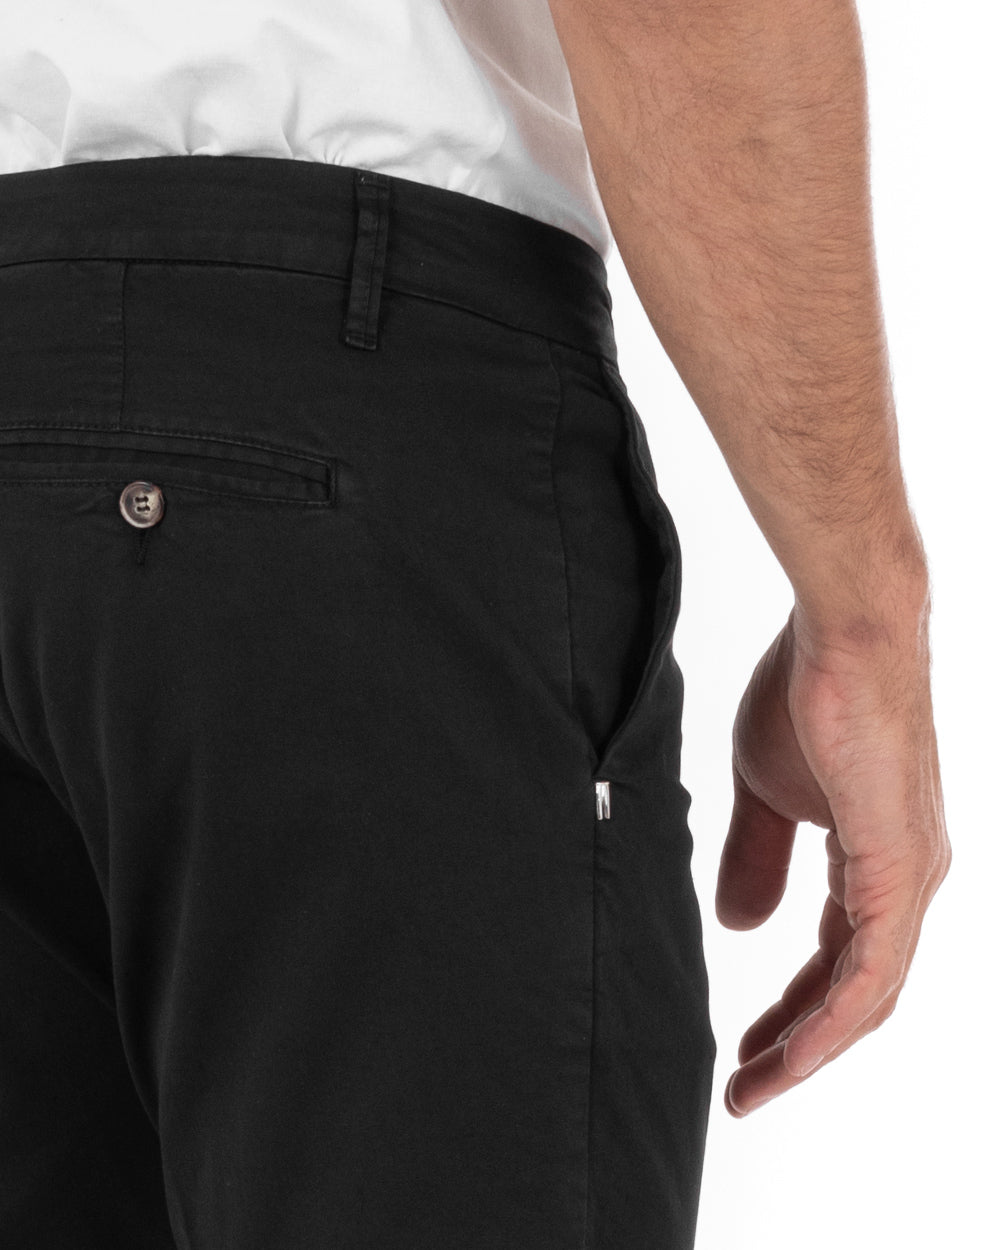 Pantaloni Uomo Cotone Tasca America Abbottonatura Allungata Capri Sartoriale Nero GIOSAL-P5685A